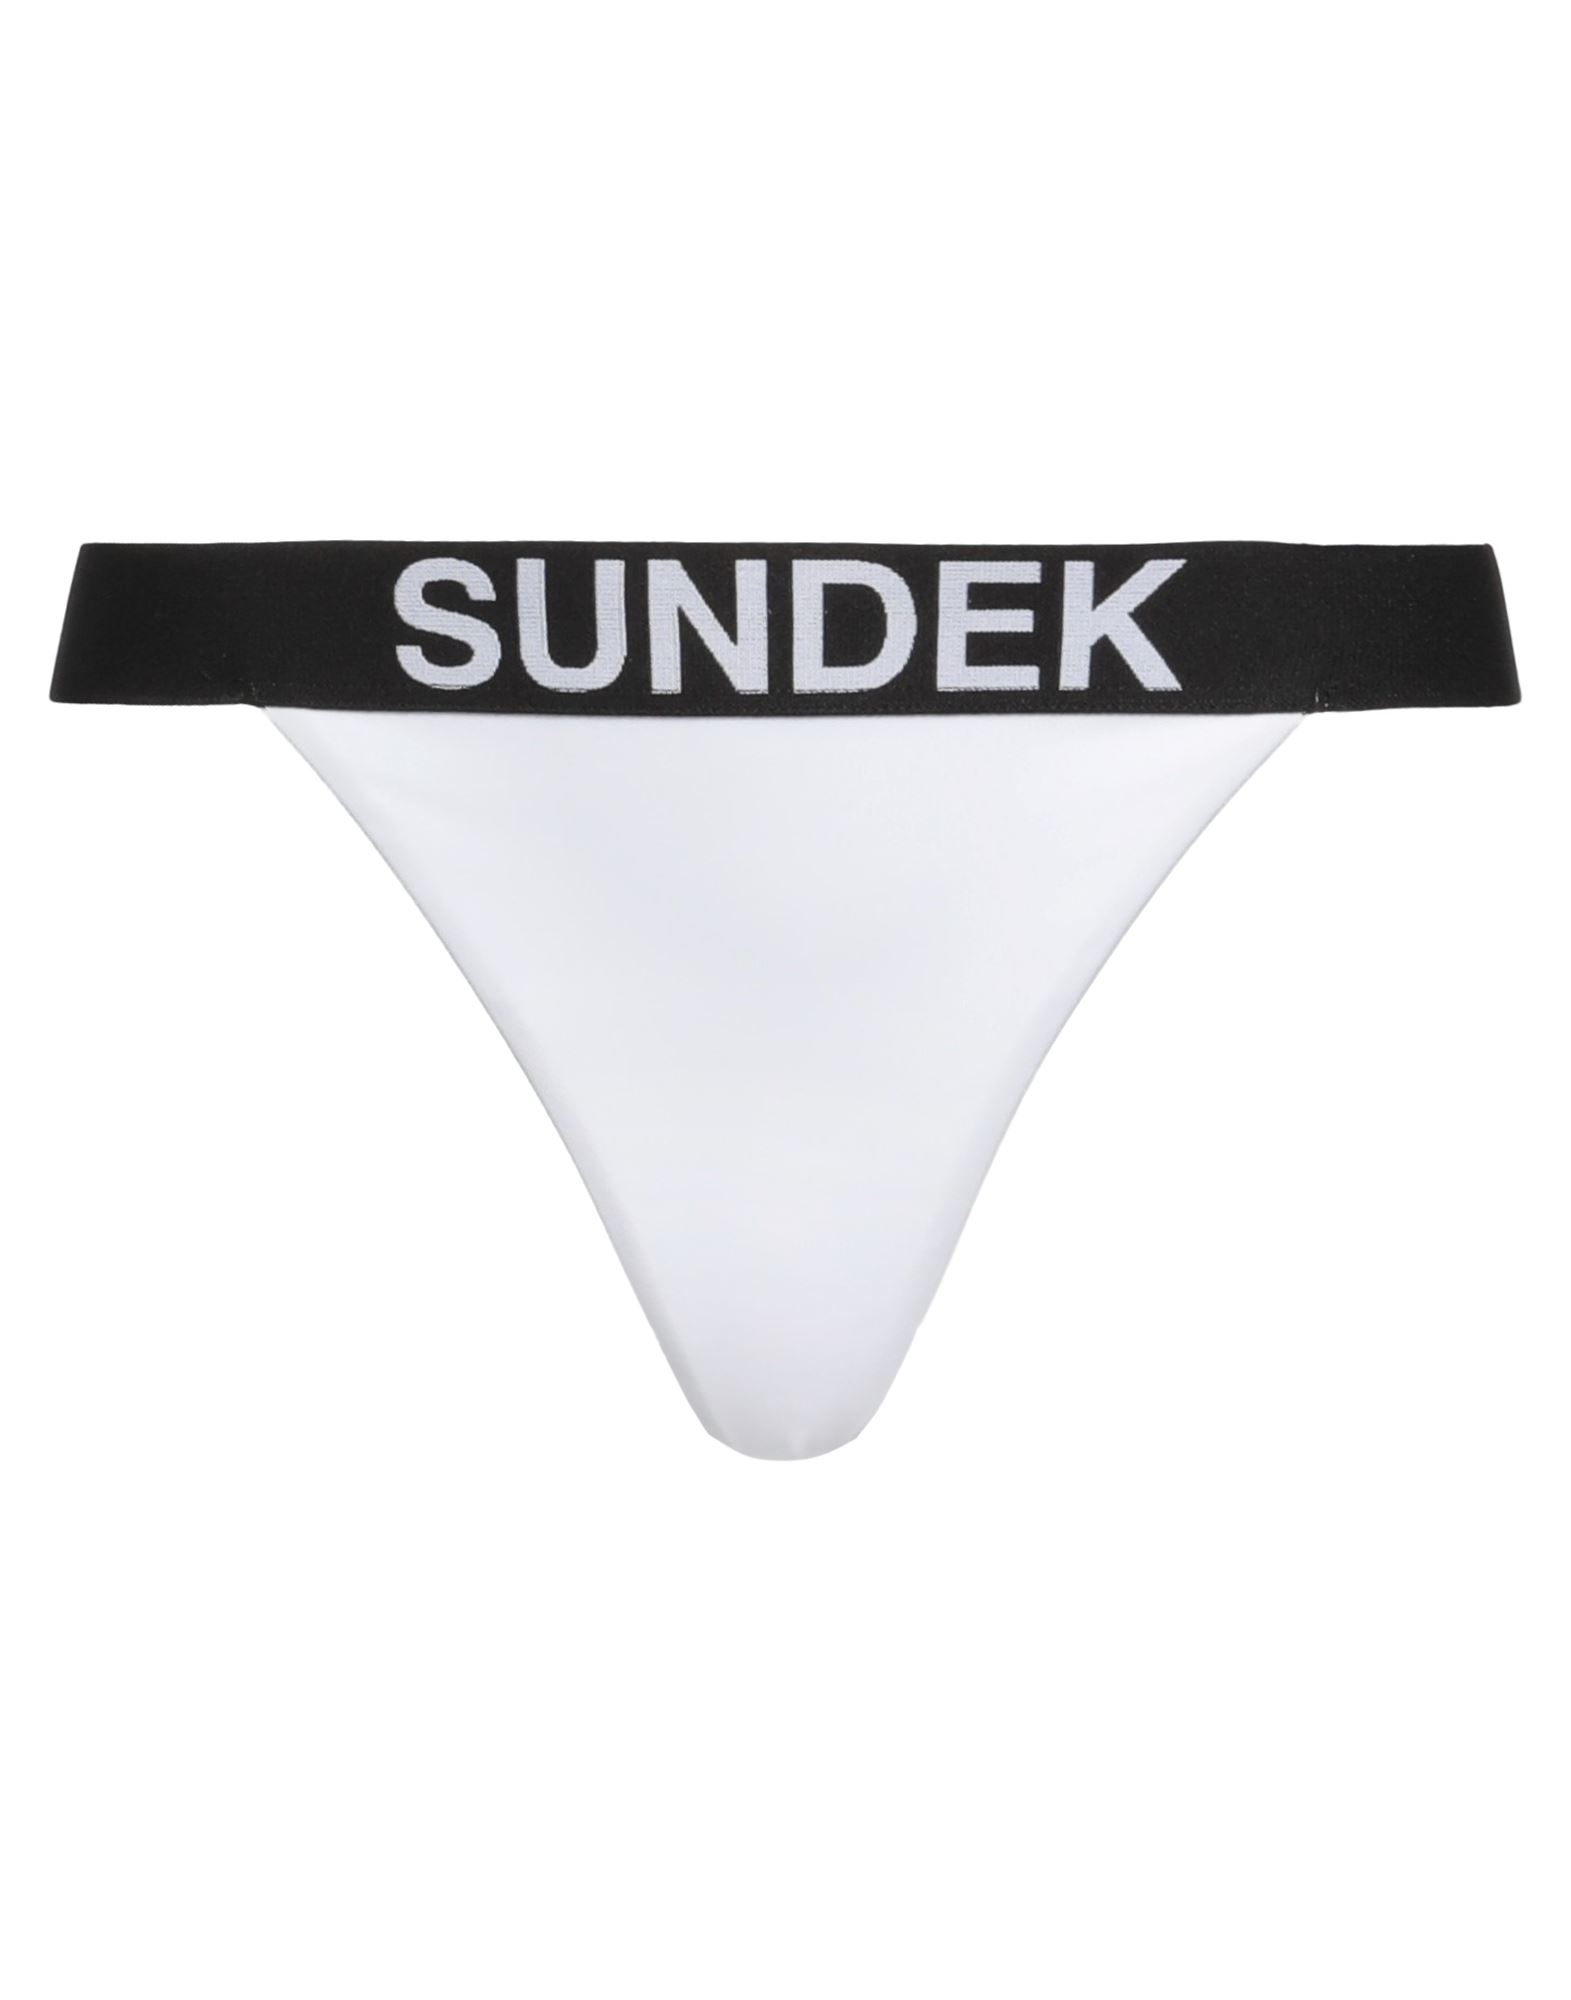 SUNDEK Bikinislip & Badehose Damen Weiß von SUNDEK